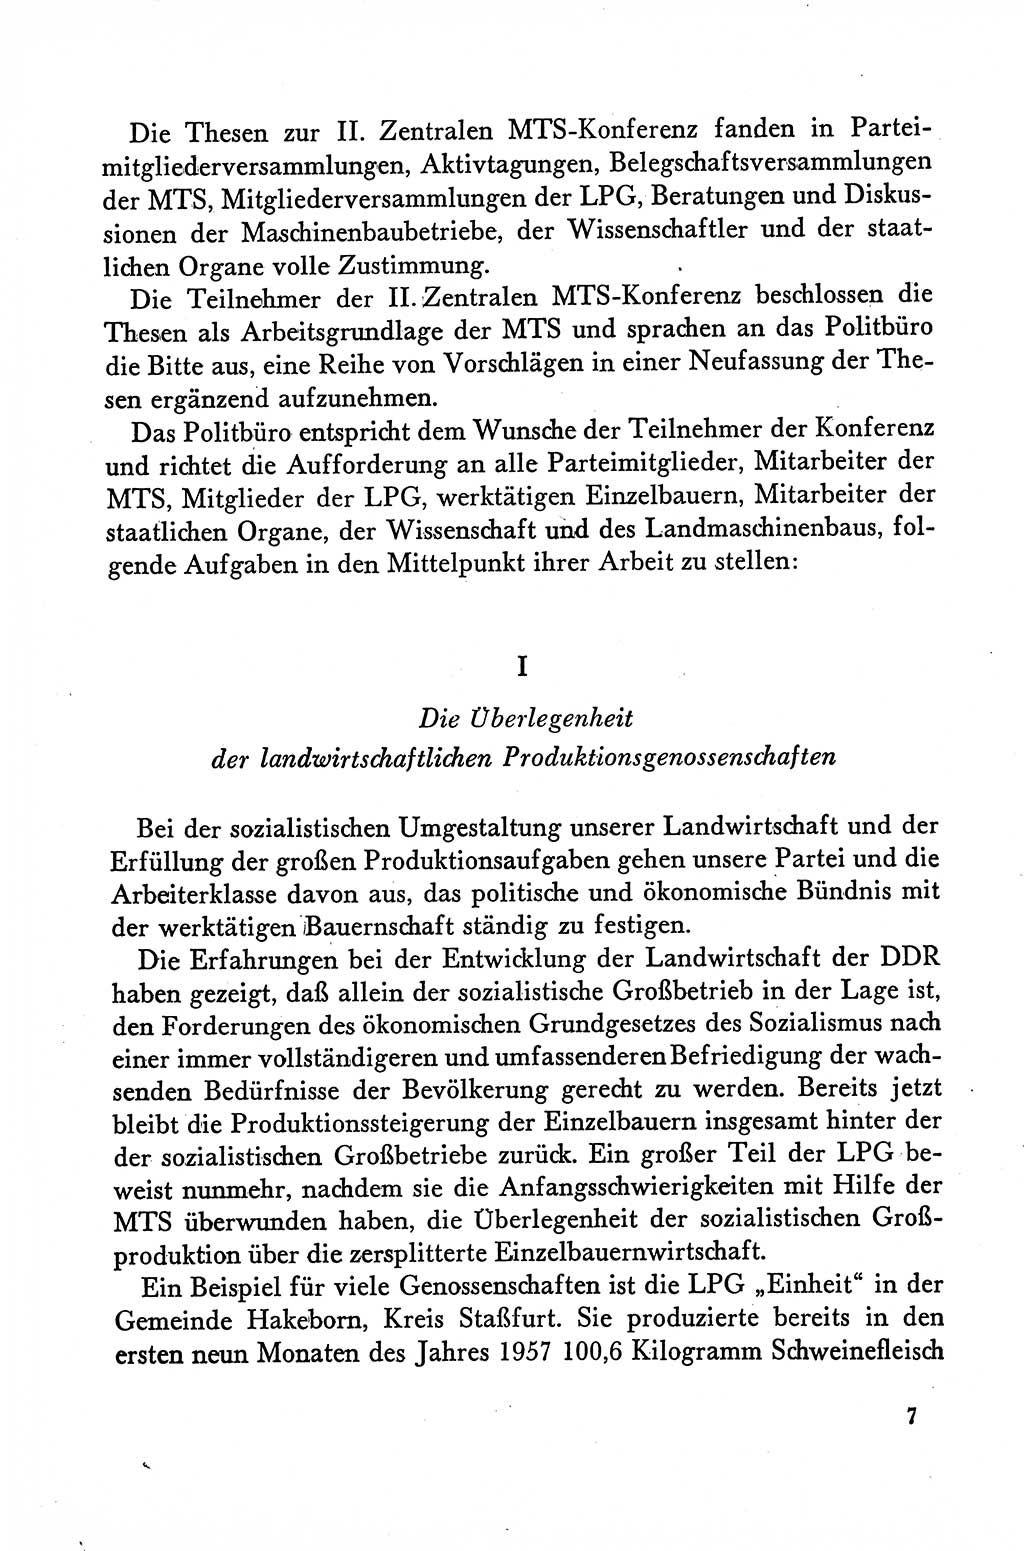 Dokumente der Sozialistischen Einheitspartei Deutschlands (SED) [Deutsche Demokratische Republik (DDR)] 1958-1959, Seite 7 (Dok. SED DDR 1958-1959, S. 7)